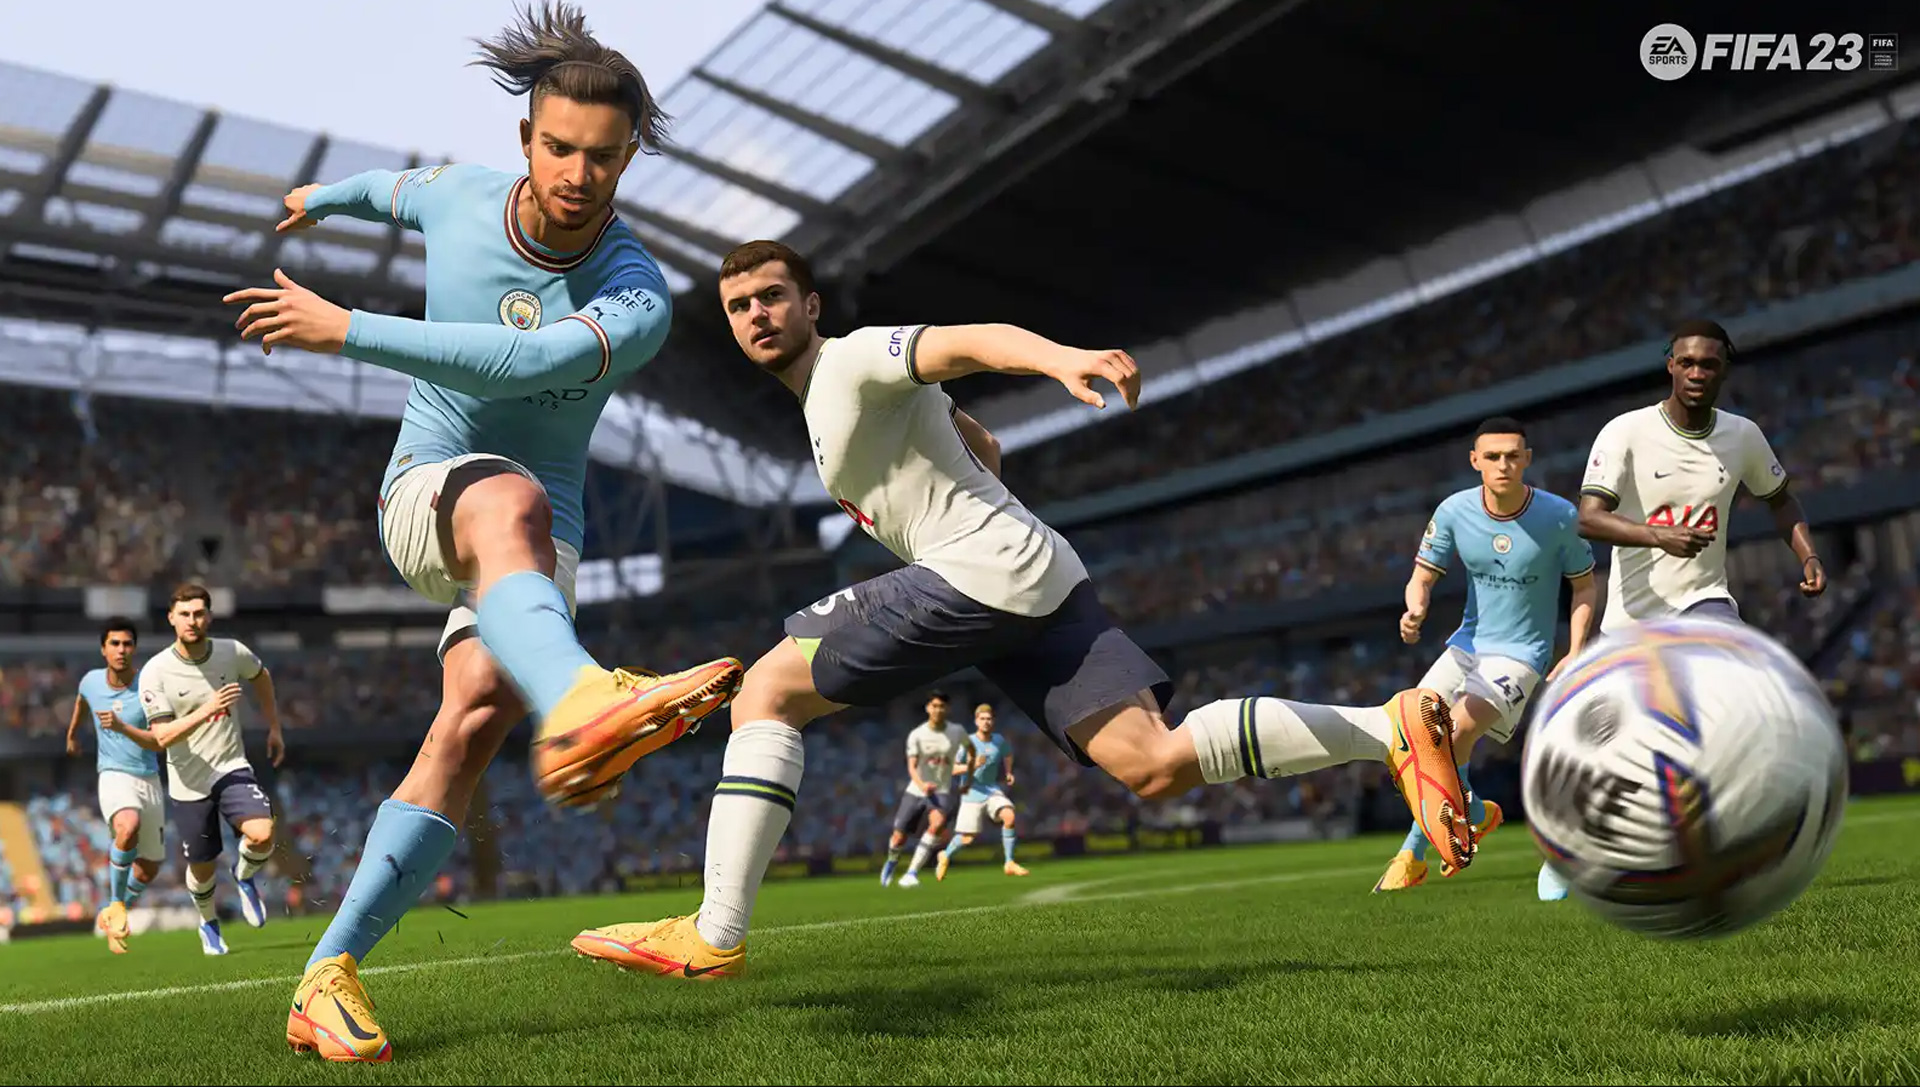 Sızdırıldı: FIFA 23 oyuncu reytingleri